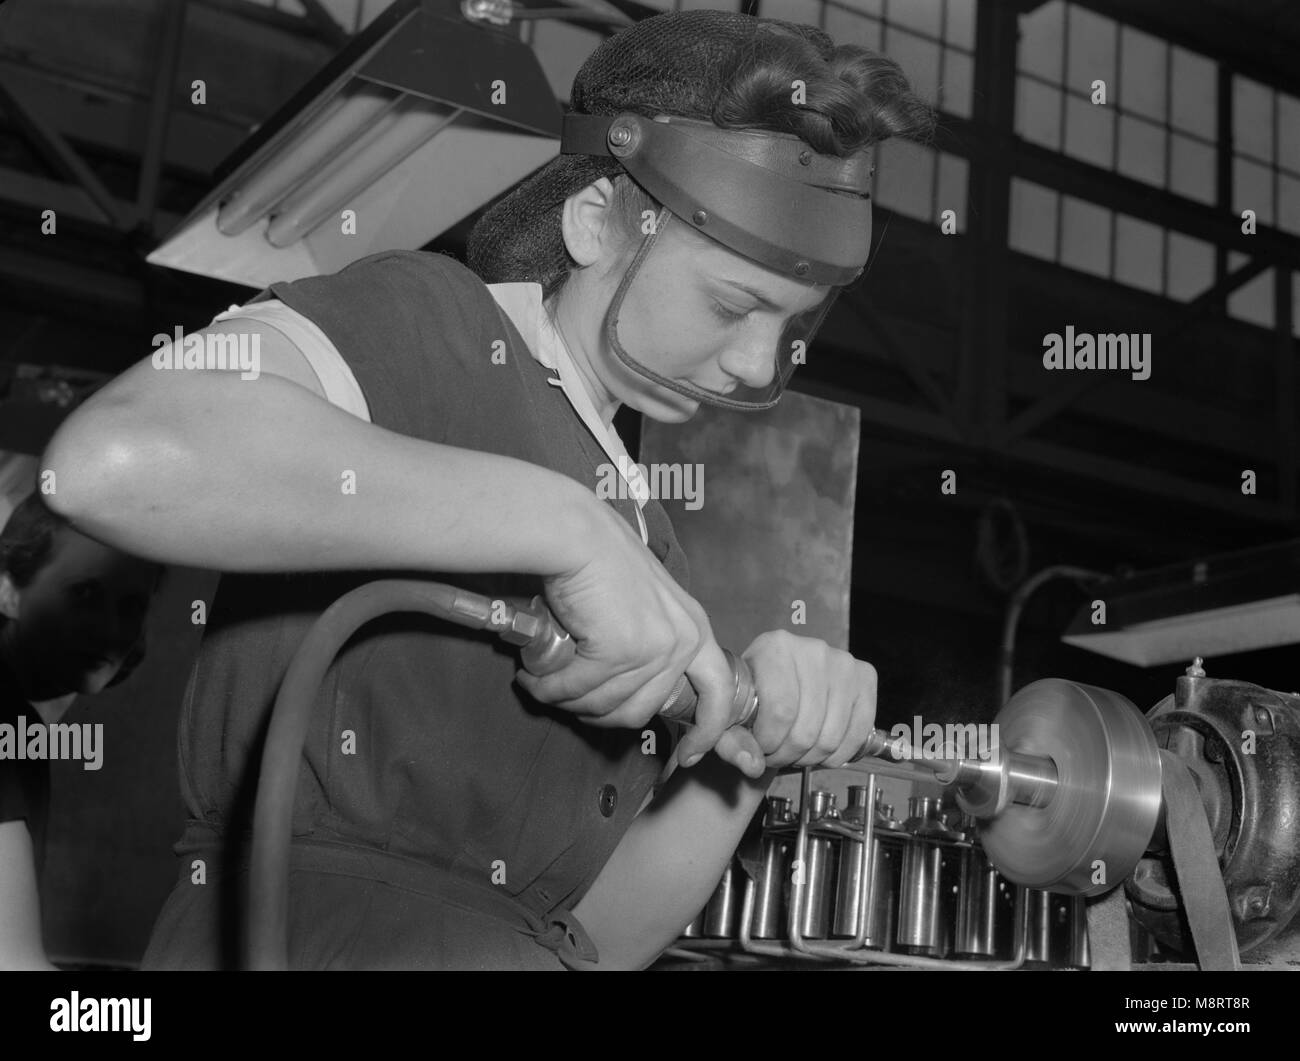 Travailleuse d'air comprimé à la machine d'exploitation des aéronefs, l'usine moteur Midwest Ann Rosener, Cabinet de la guerre, de l'Information Août 1942 Banque D'Images